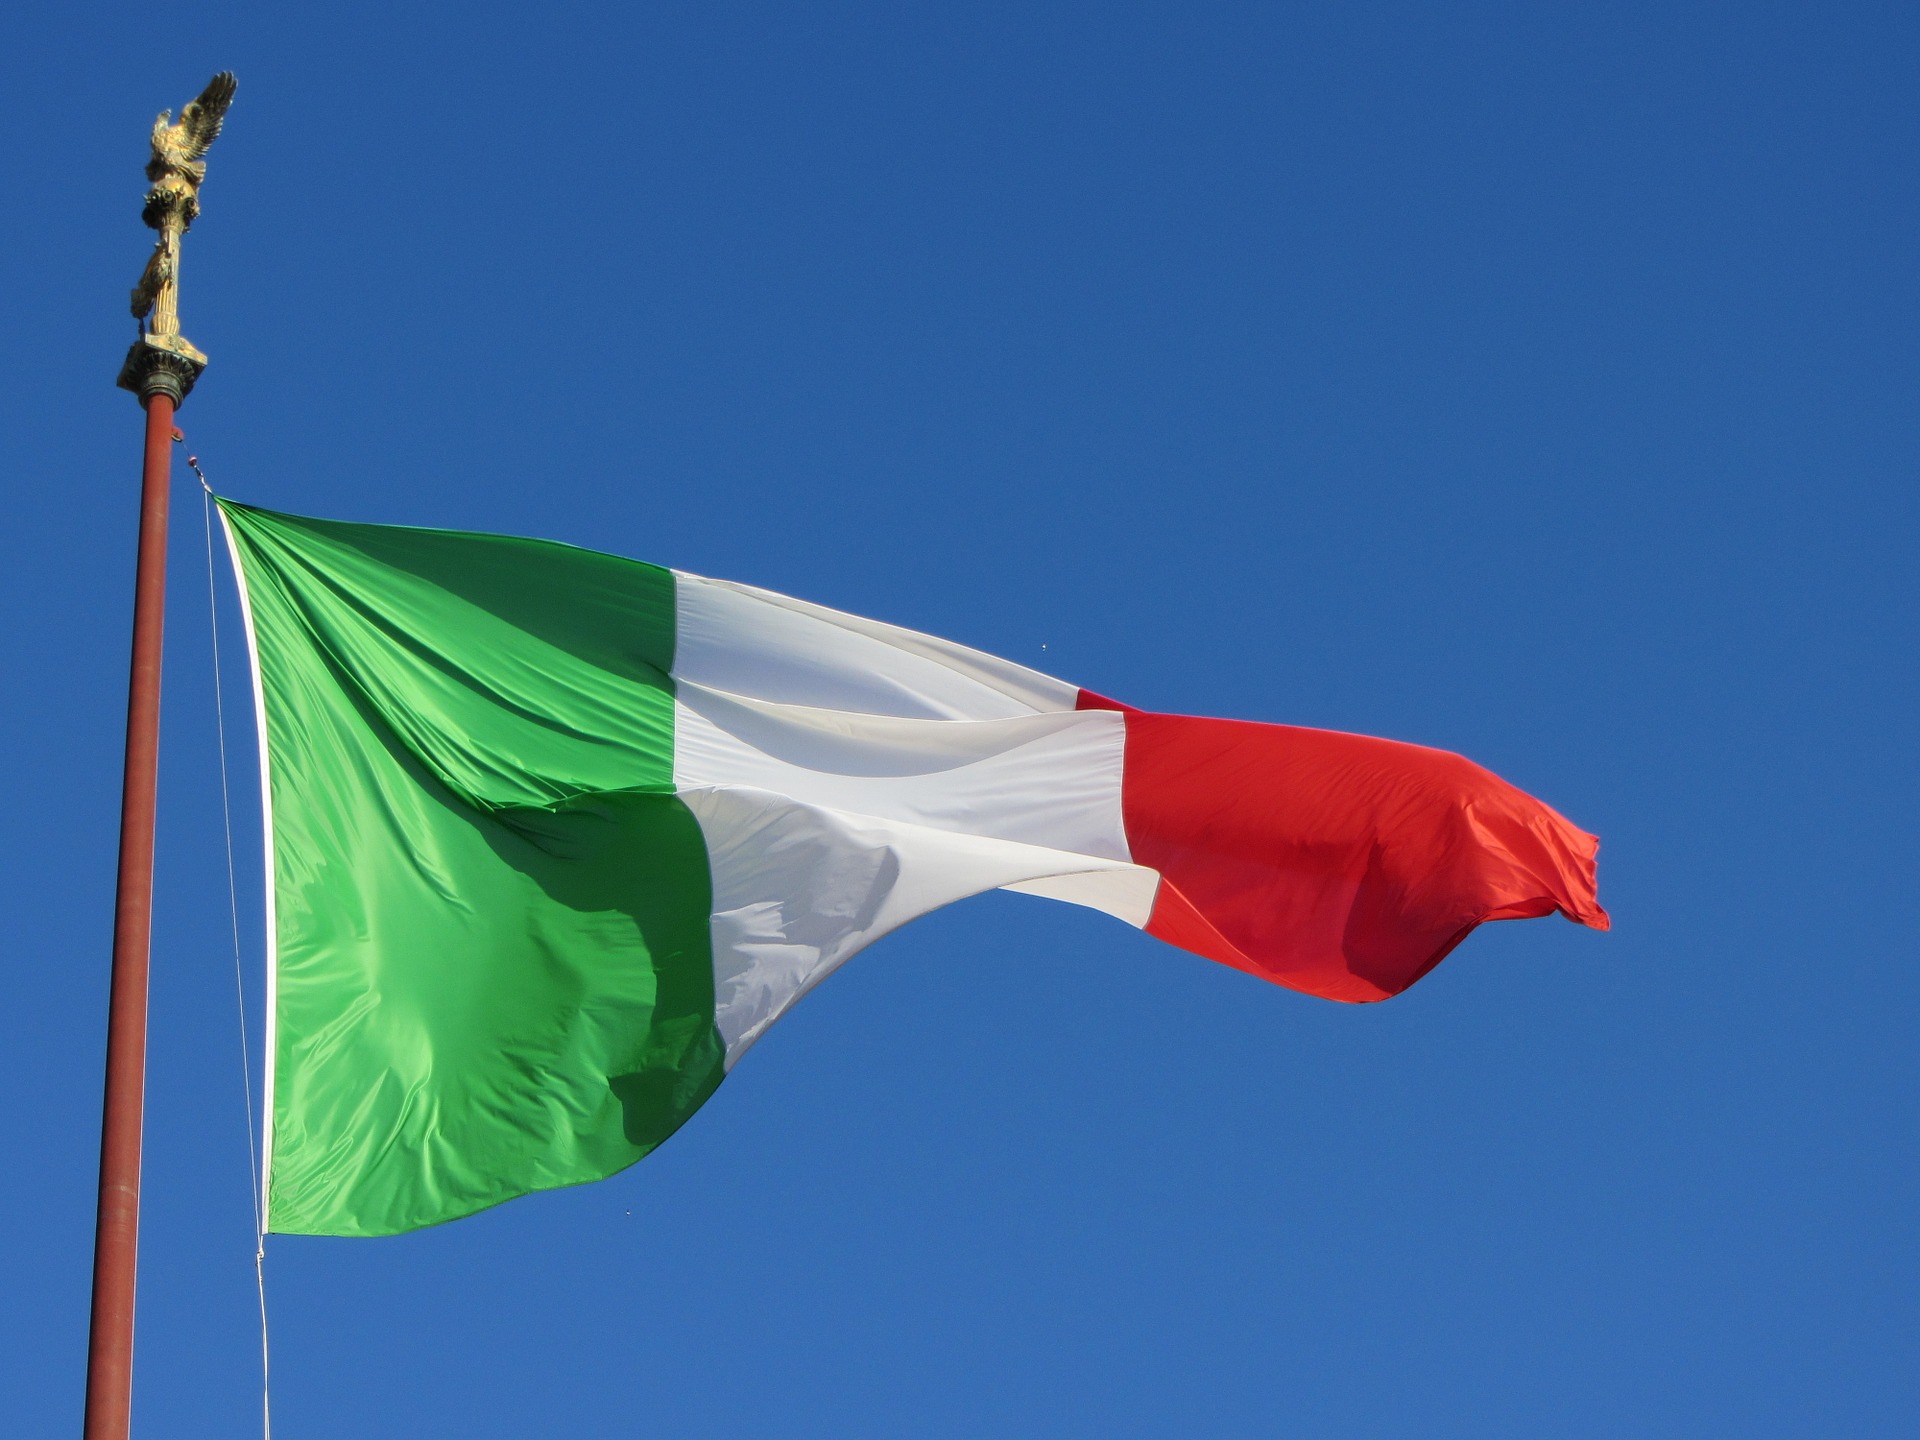 Permesso di soggiorno ex art. 31 e Cittadinanza italiana bandiera e decreto flussi